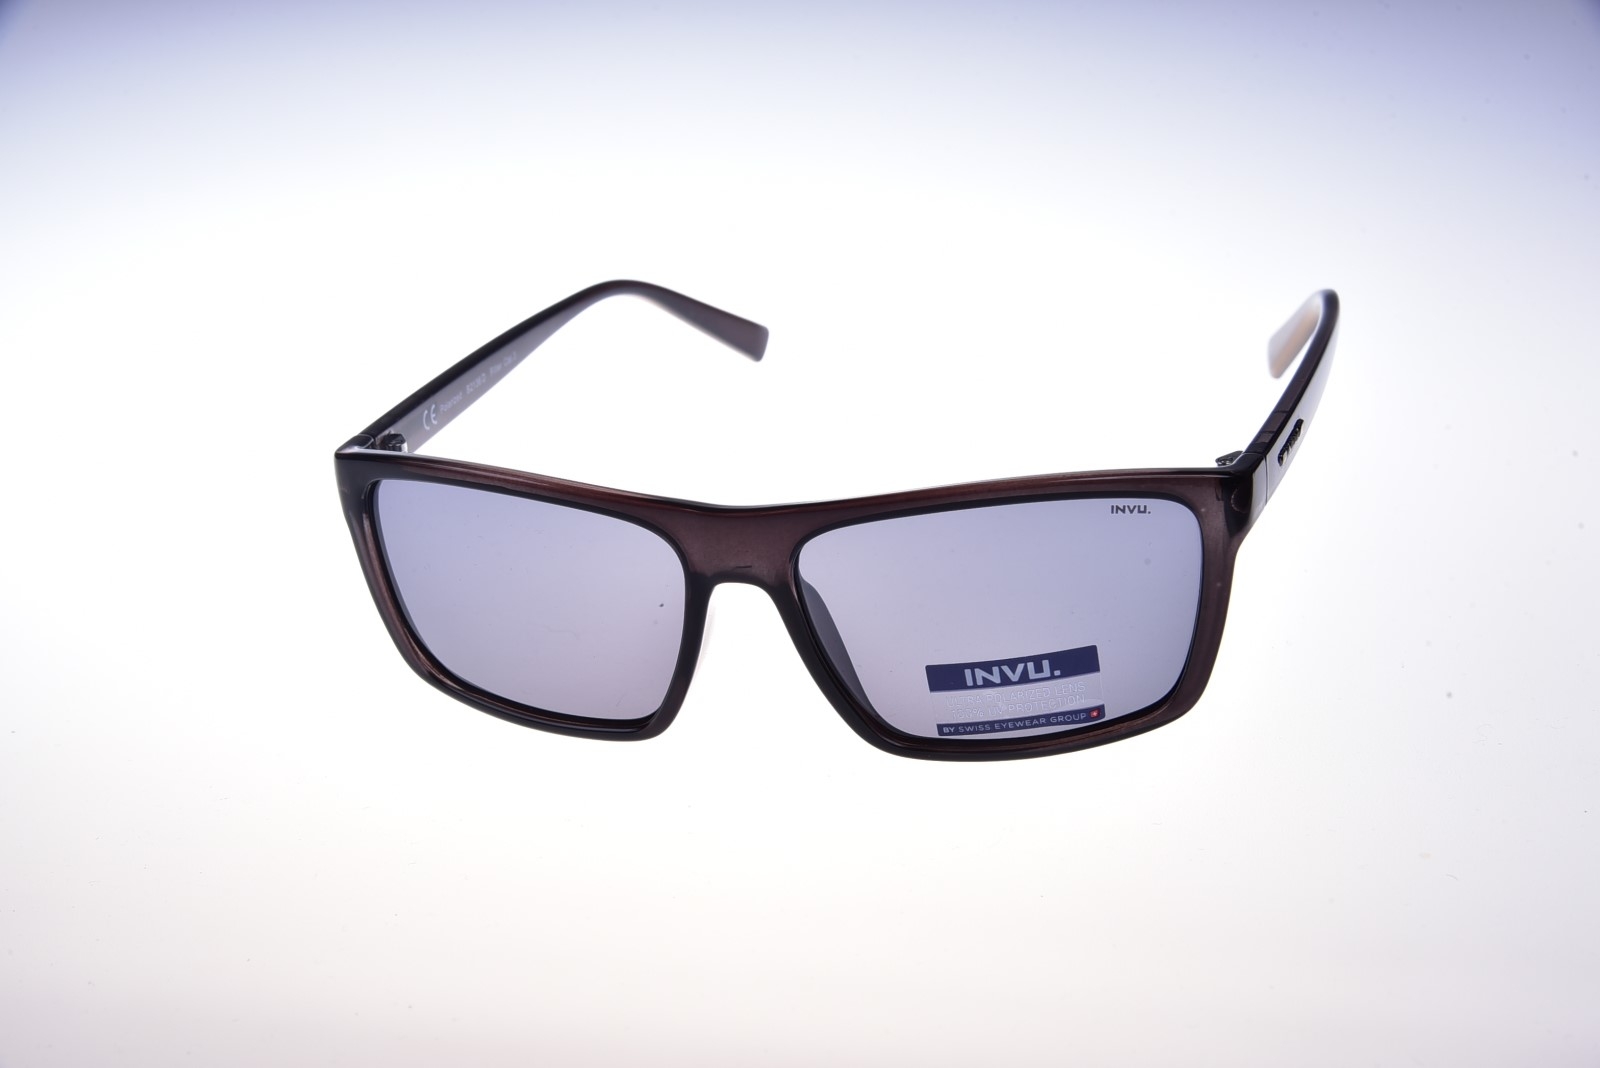 INVU. B2136A - Pánske slnečné okuliare